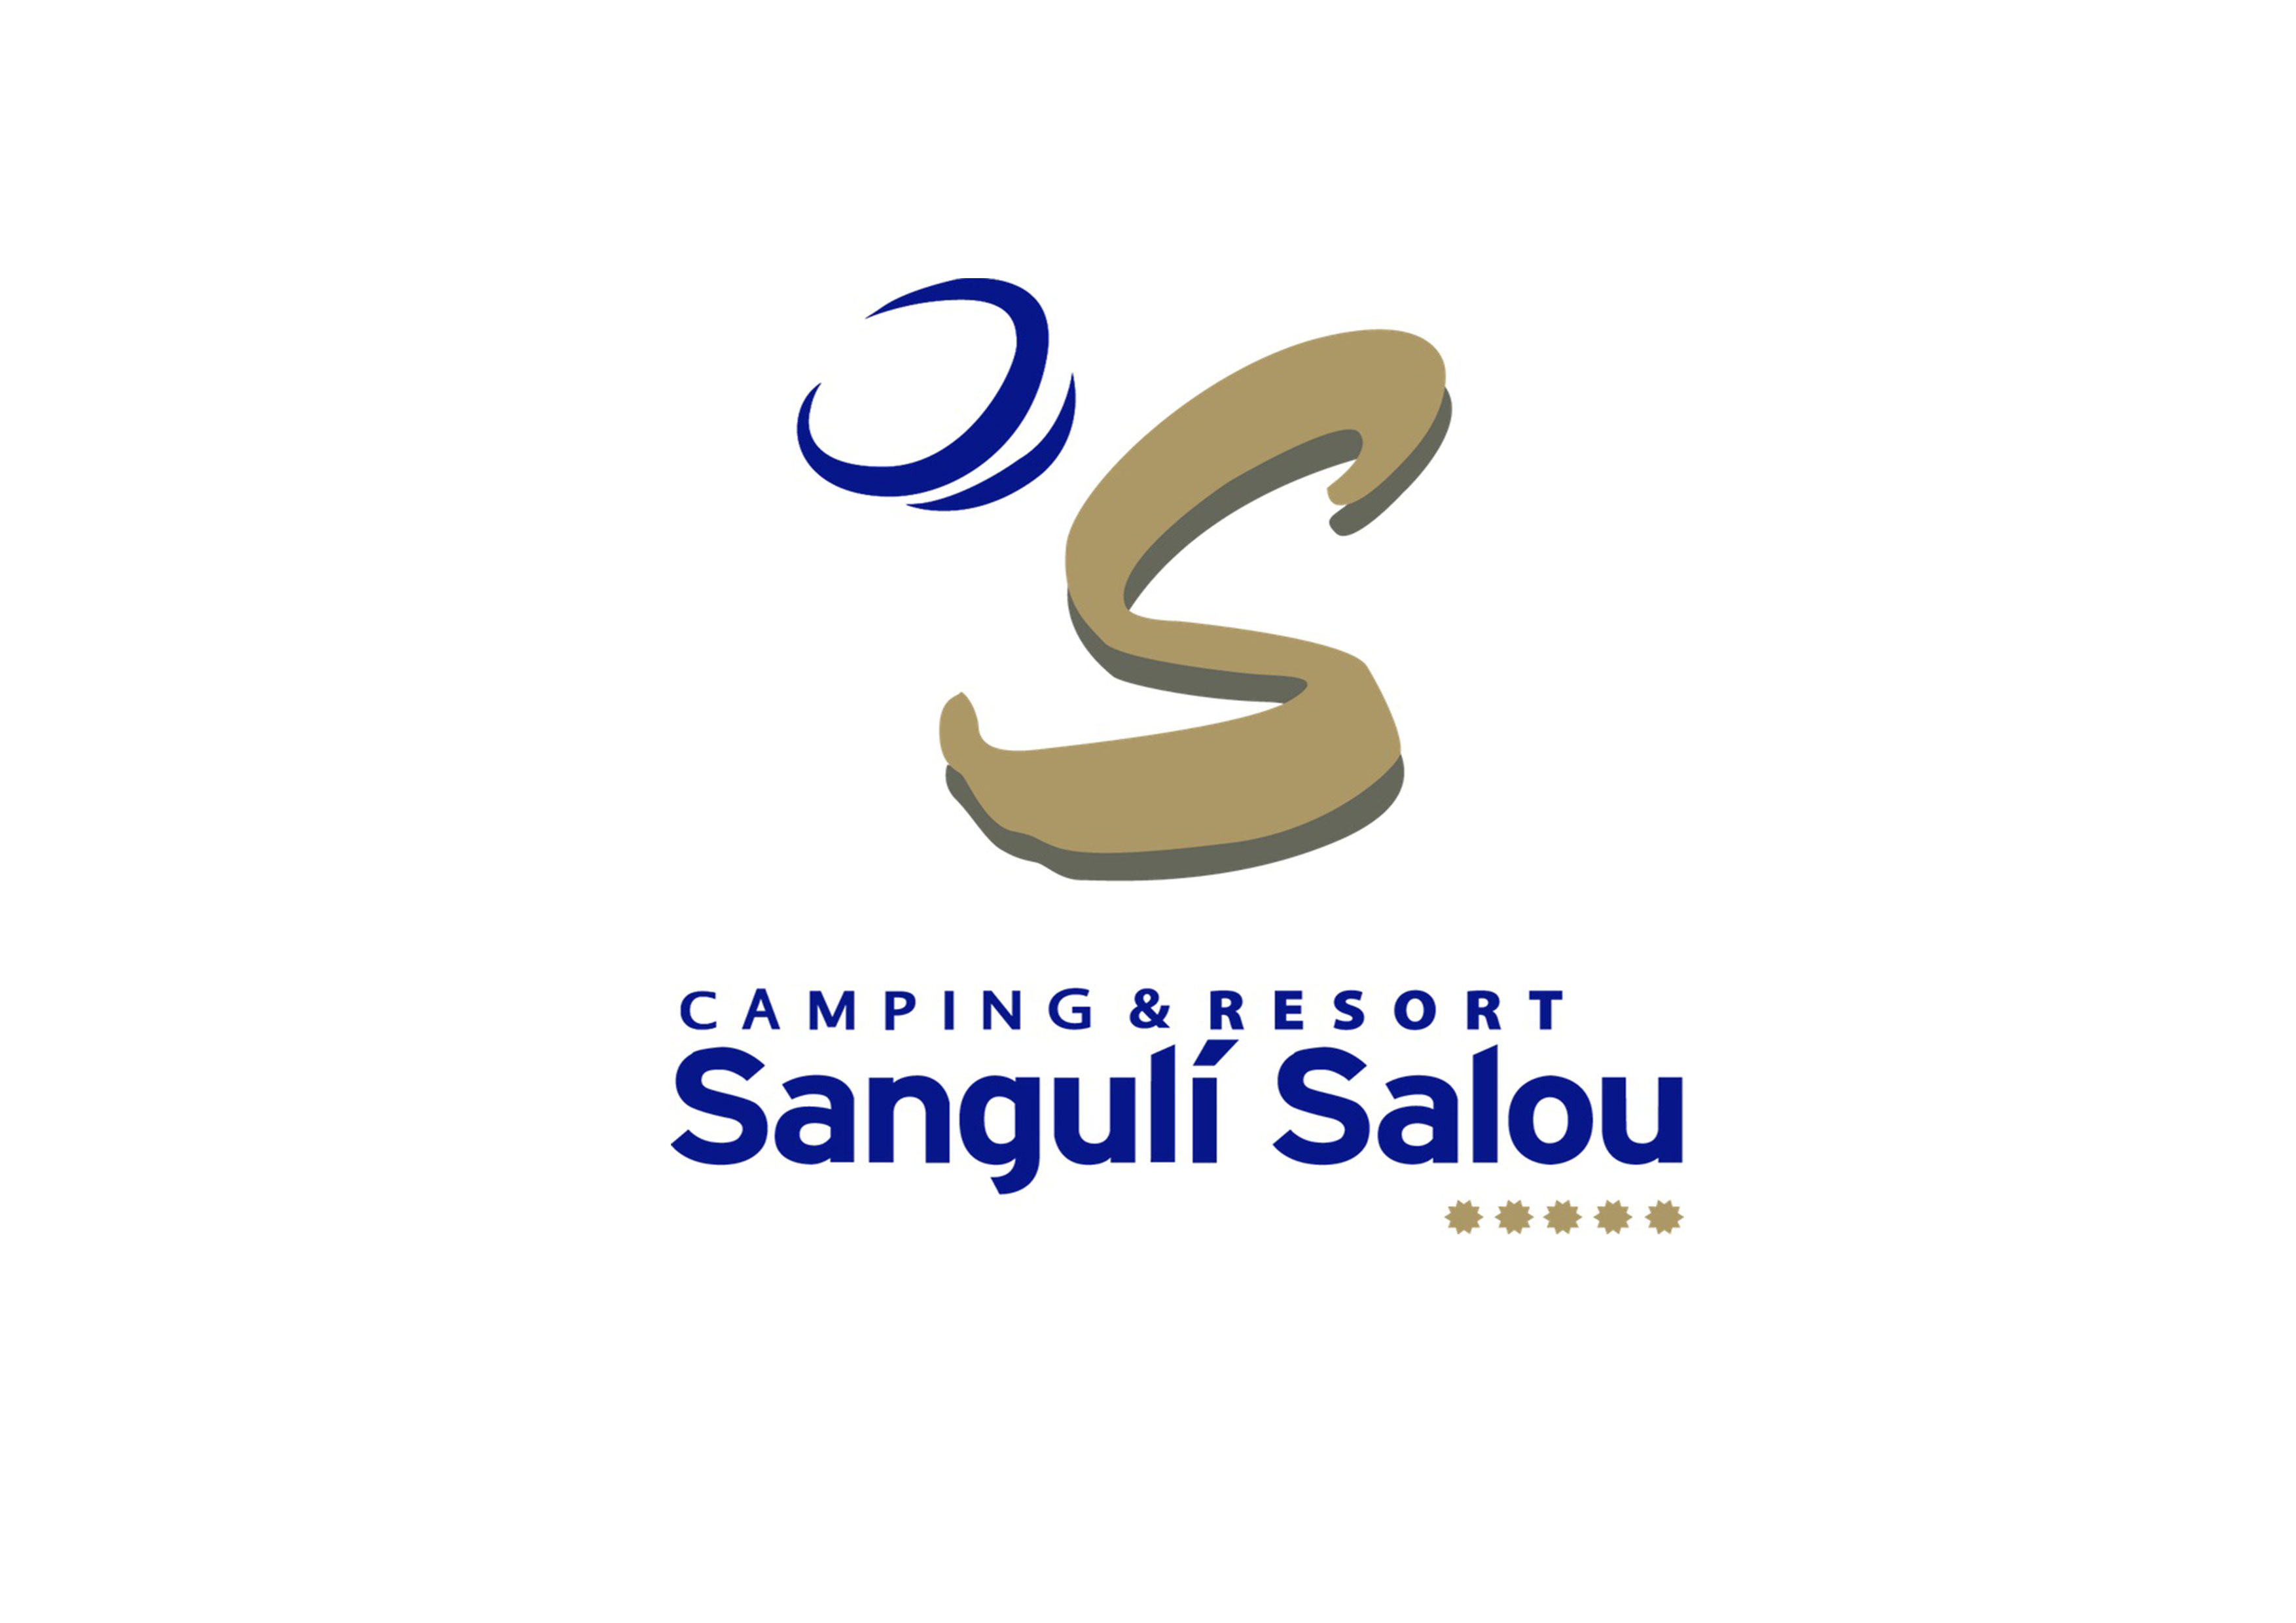 Camping & Resort Sangulí Salou